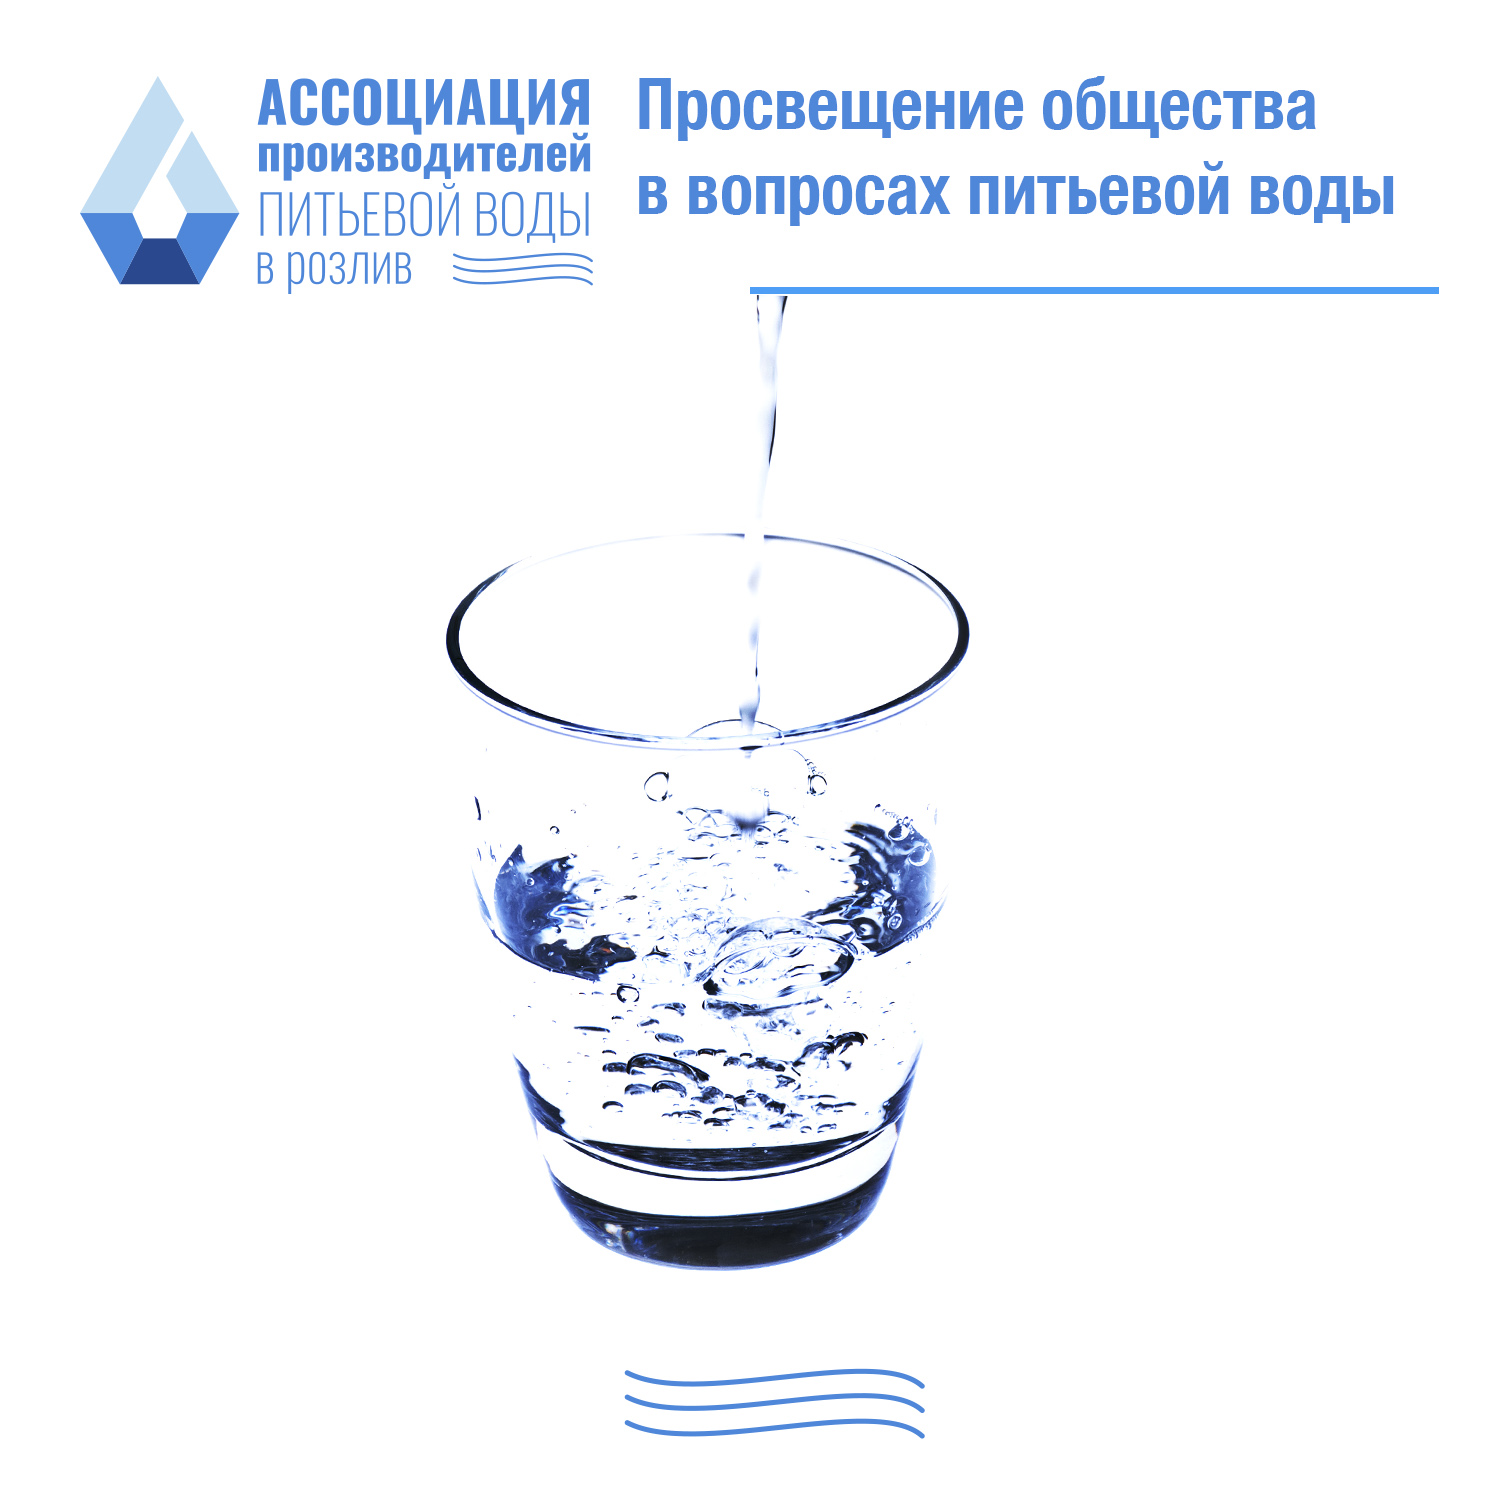 Просвещение общества в вопросах питьевой воды – ключевой фактор обеспечения безопасности здоровья